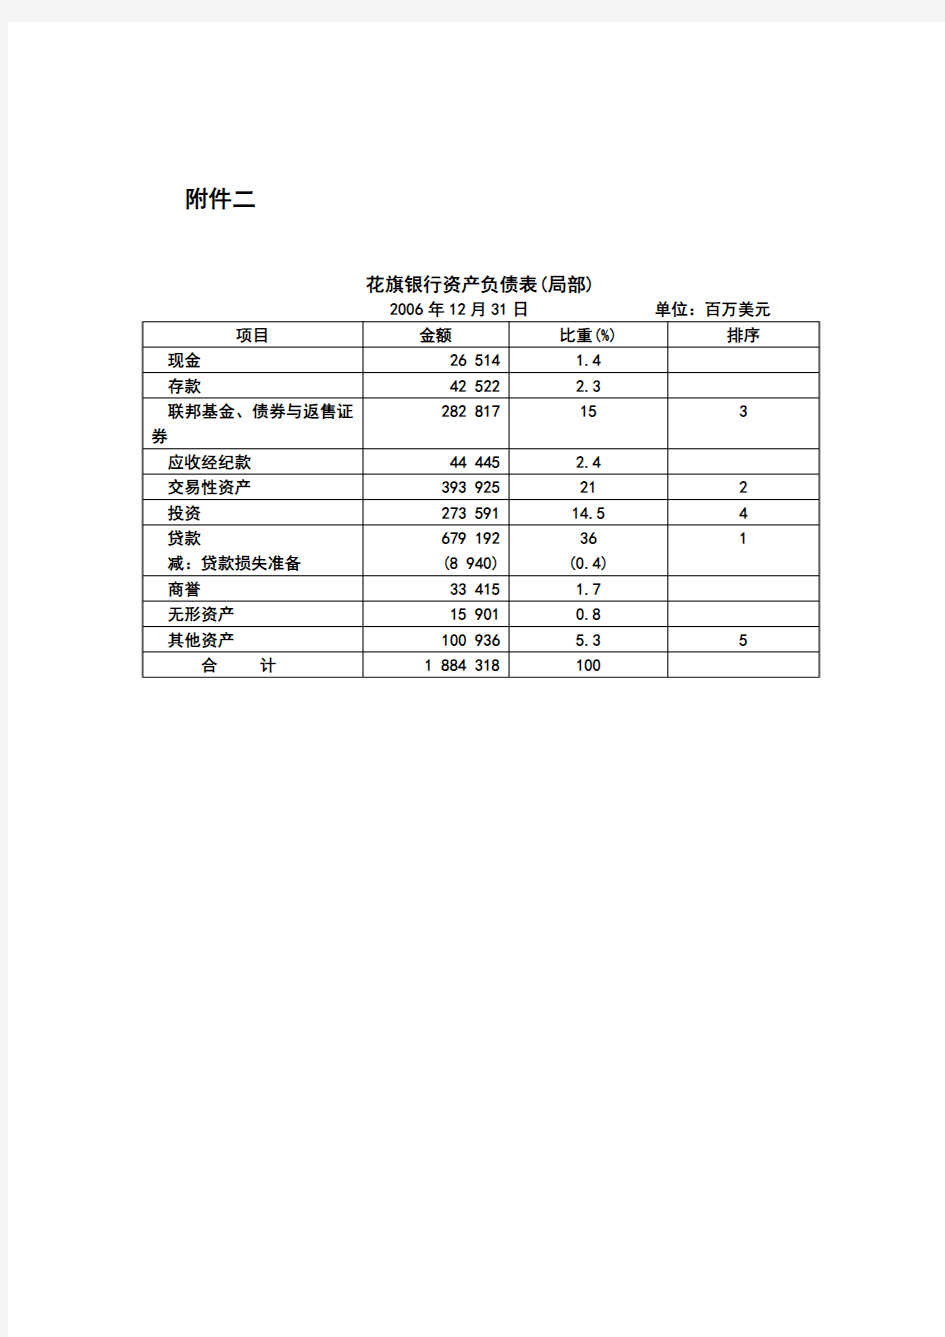 中国银行集团资产负债表